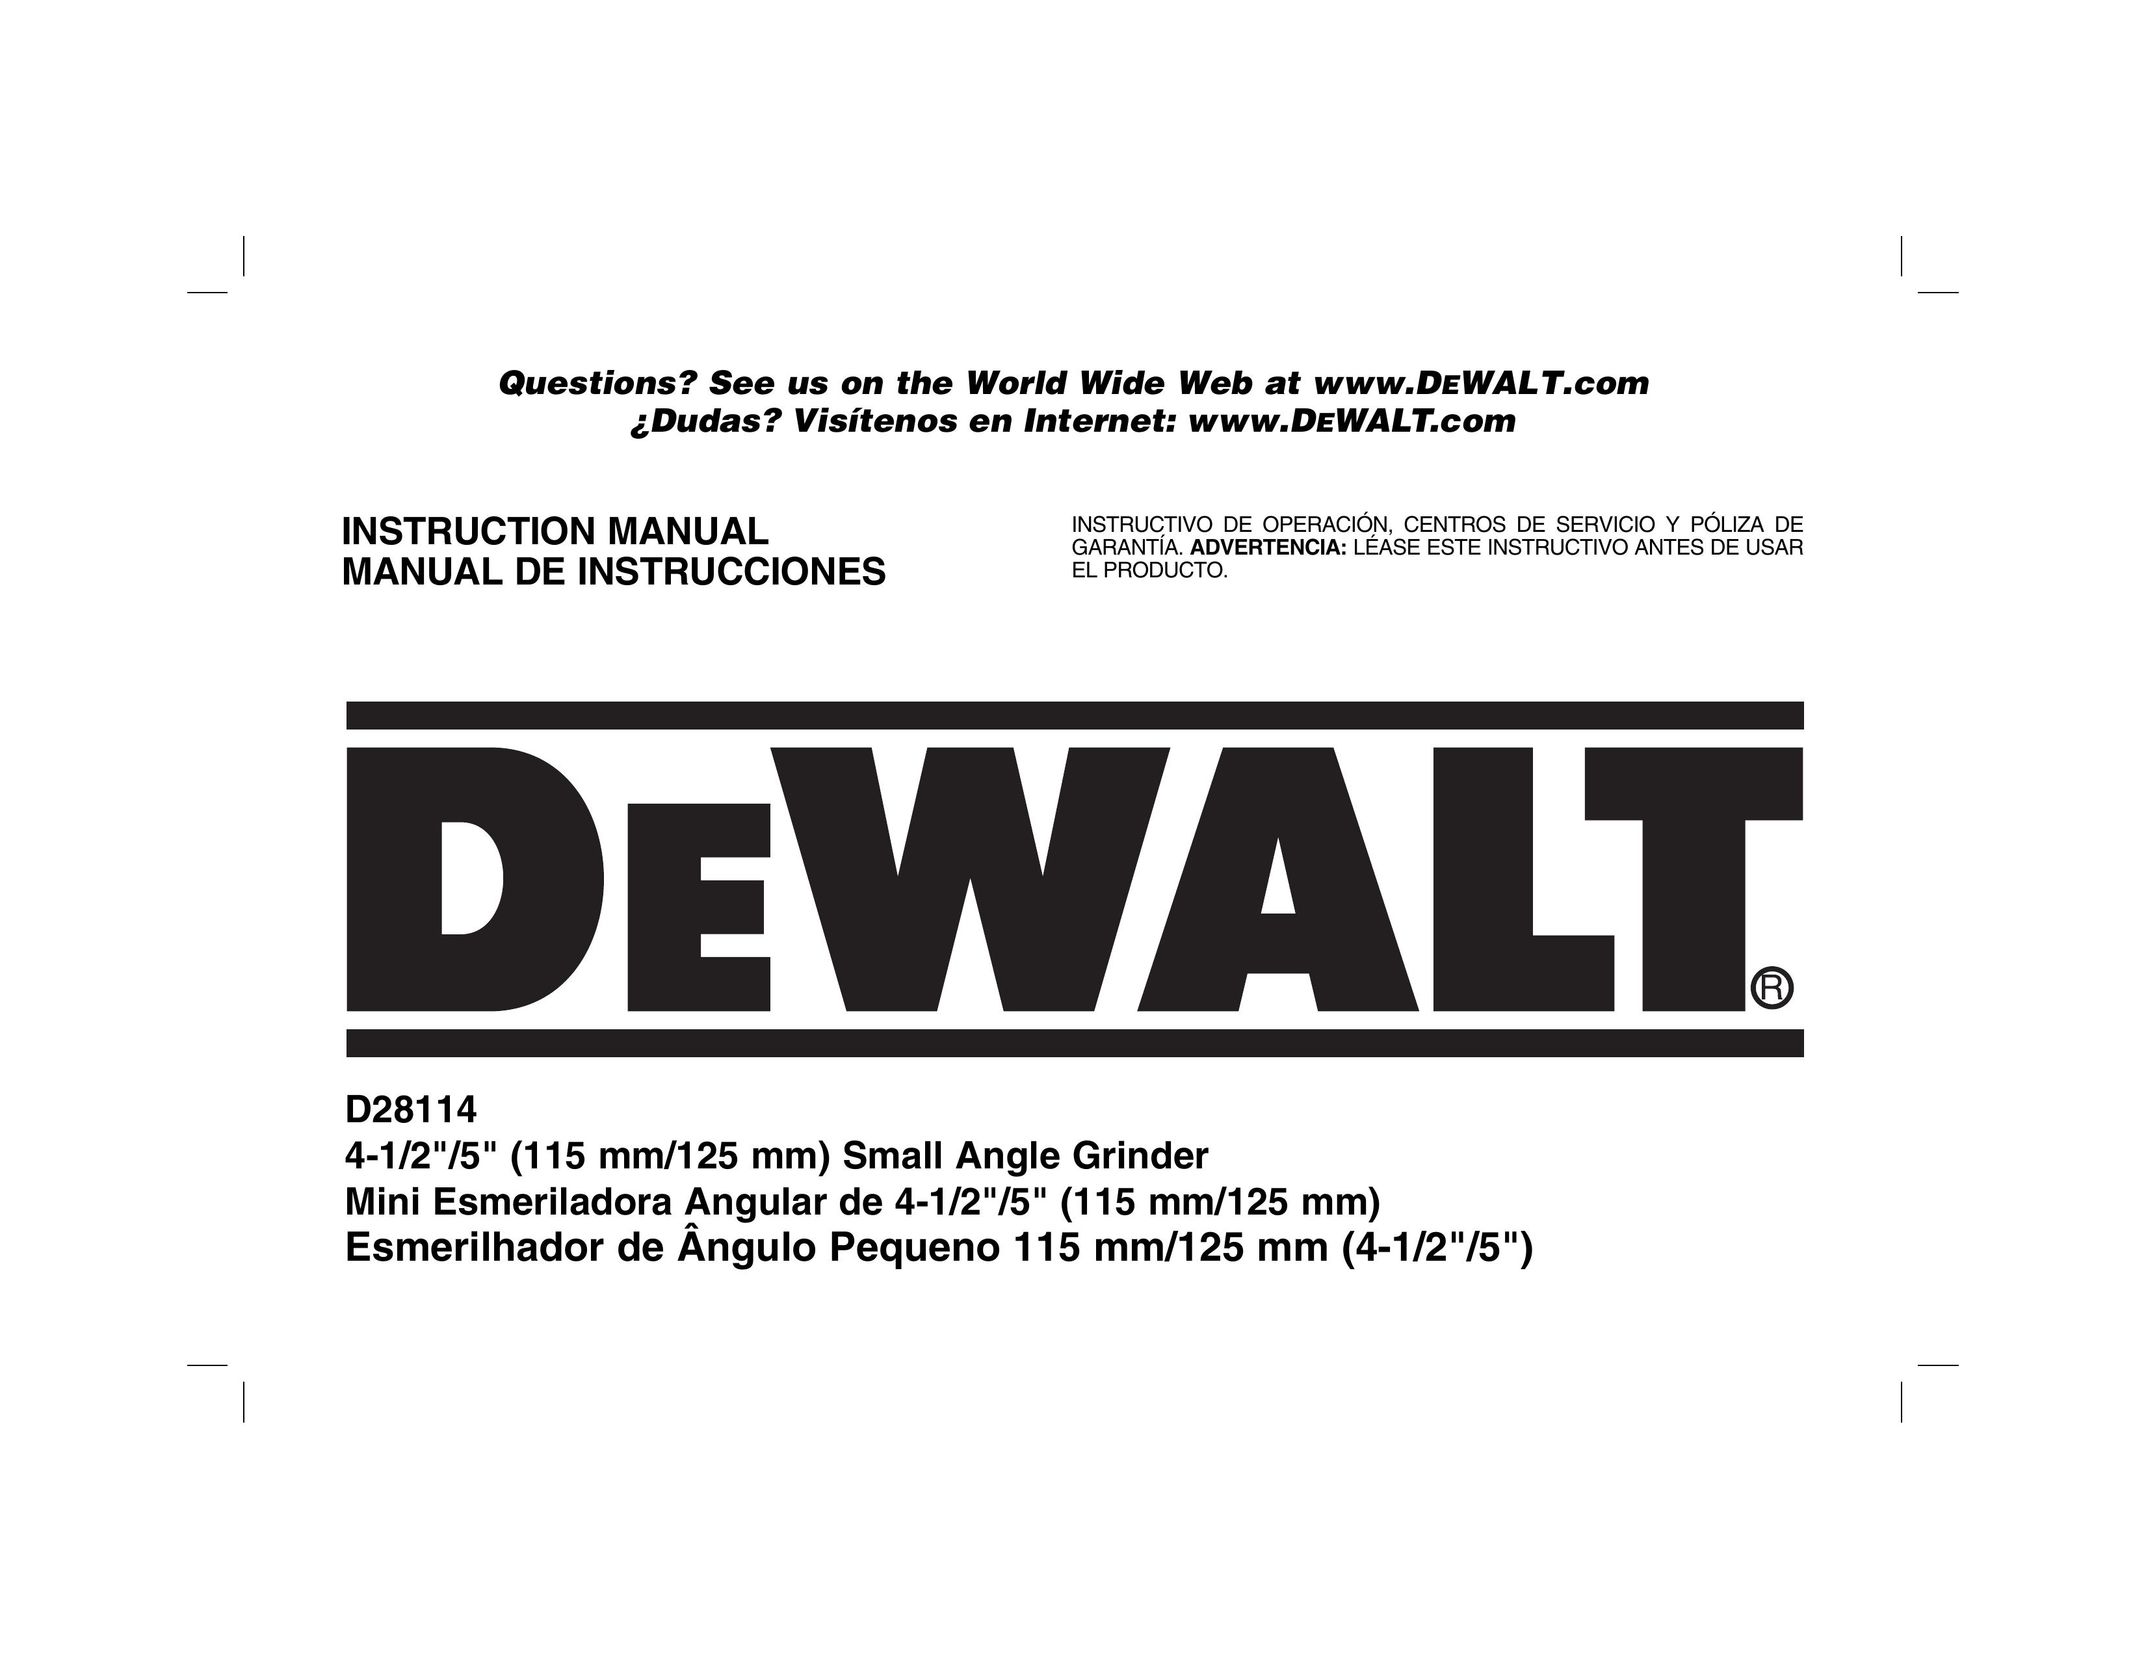 DeWalt D28114R Grinder User Manual